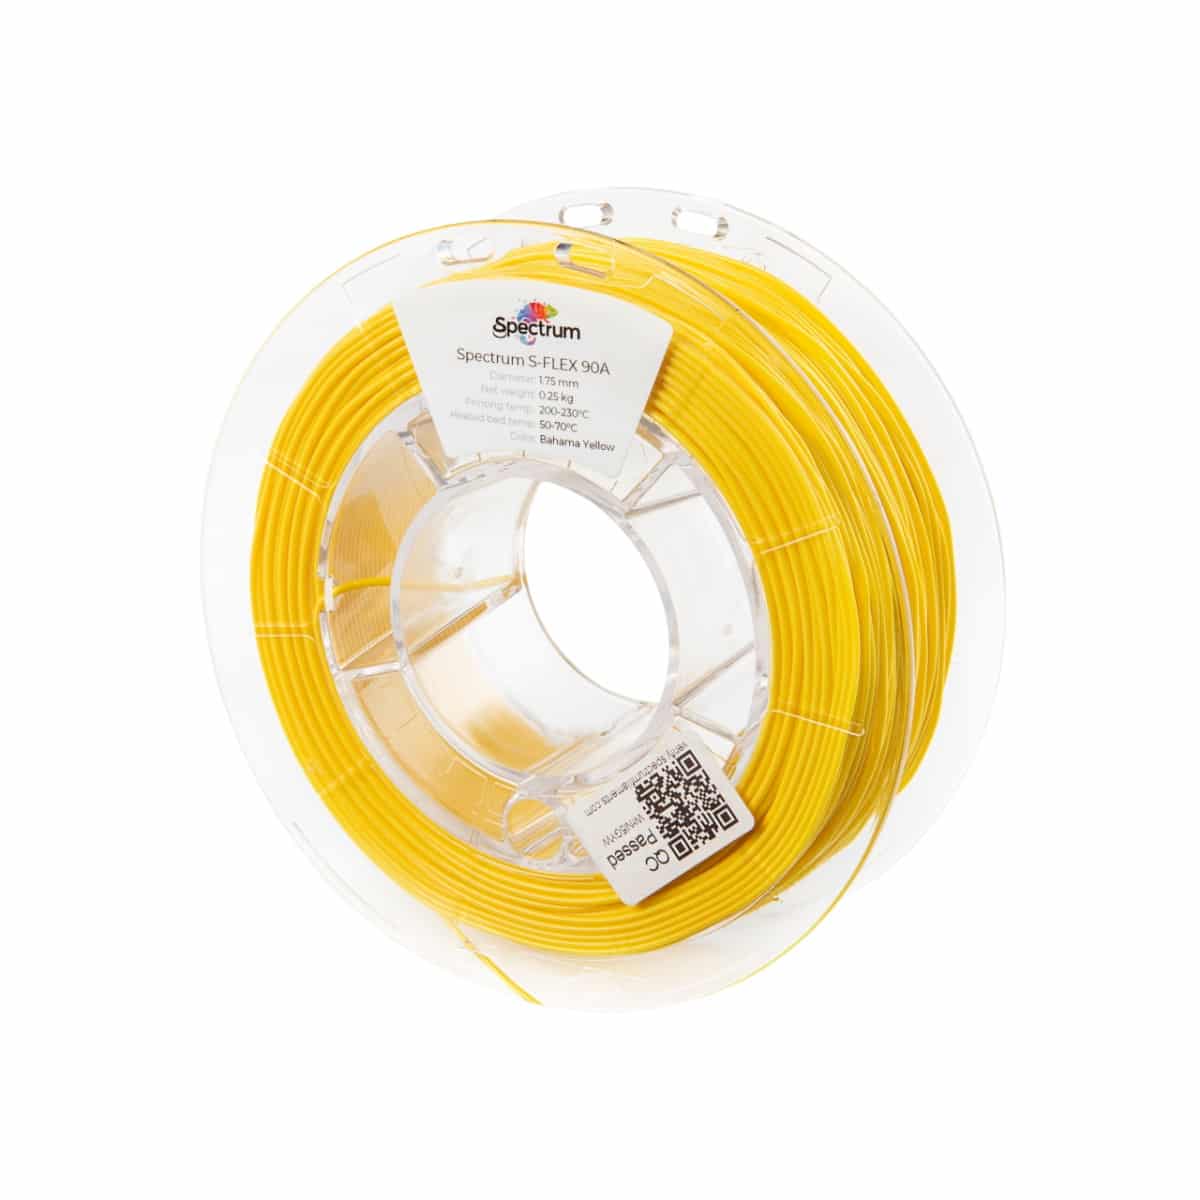 Køb Spectrum Filaments - S-Flex 90A - 1.75mm - Bahama Yellow - 0.25kg - Pris 140.00 kr.